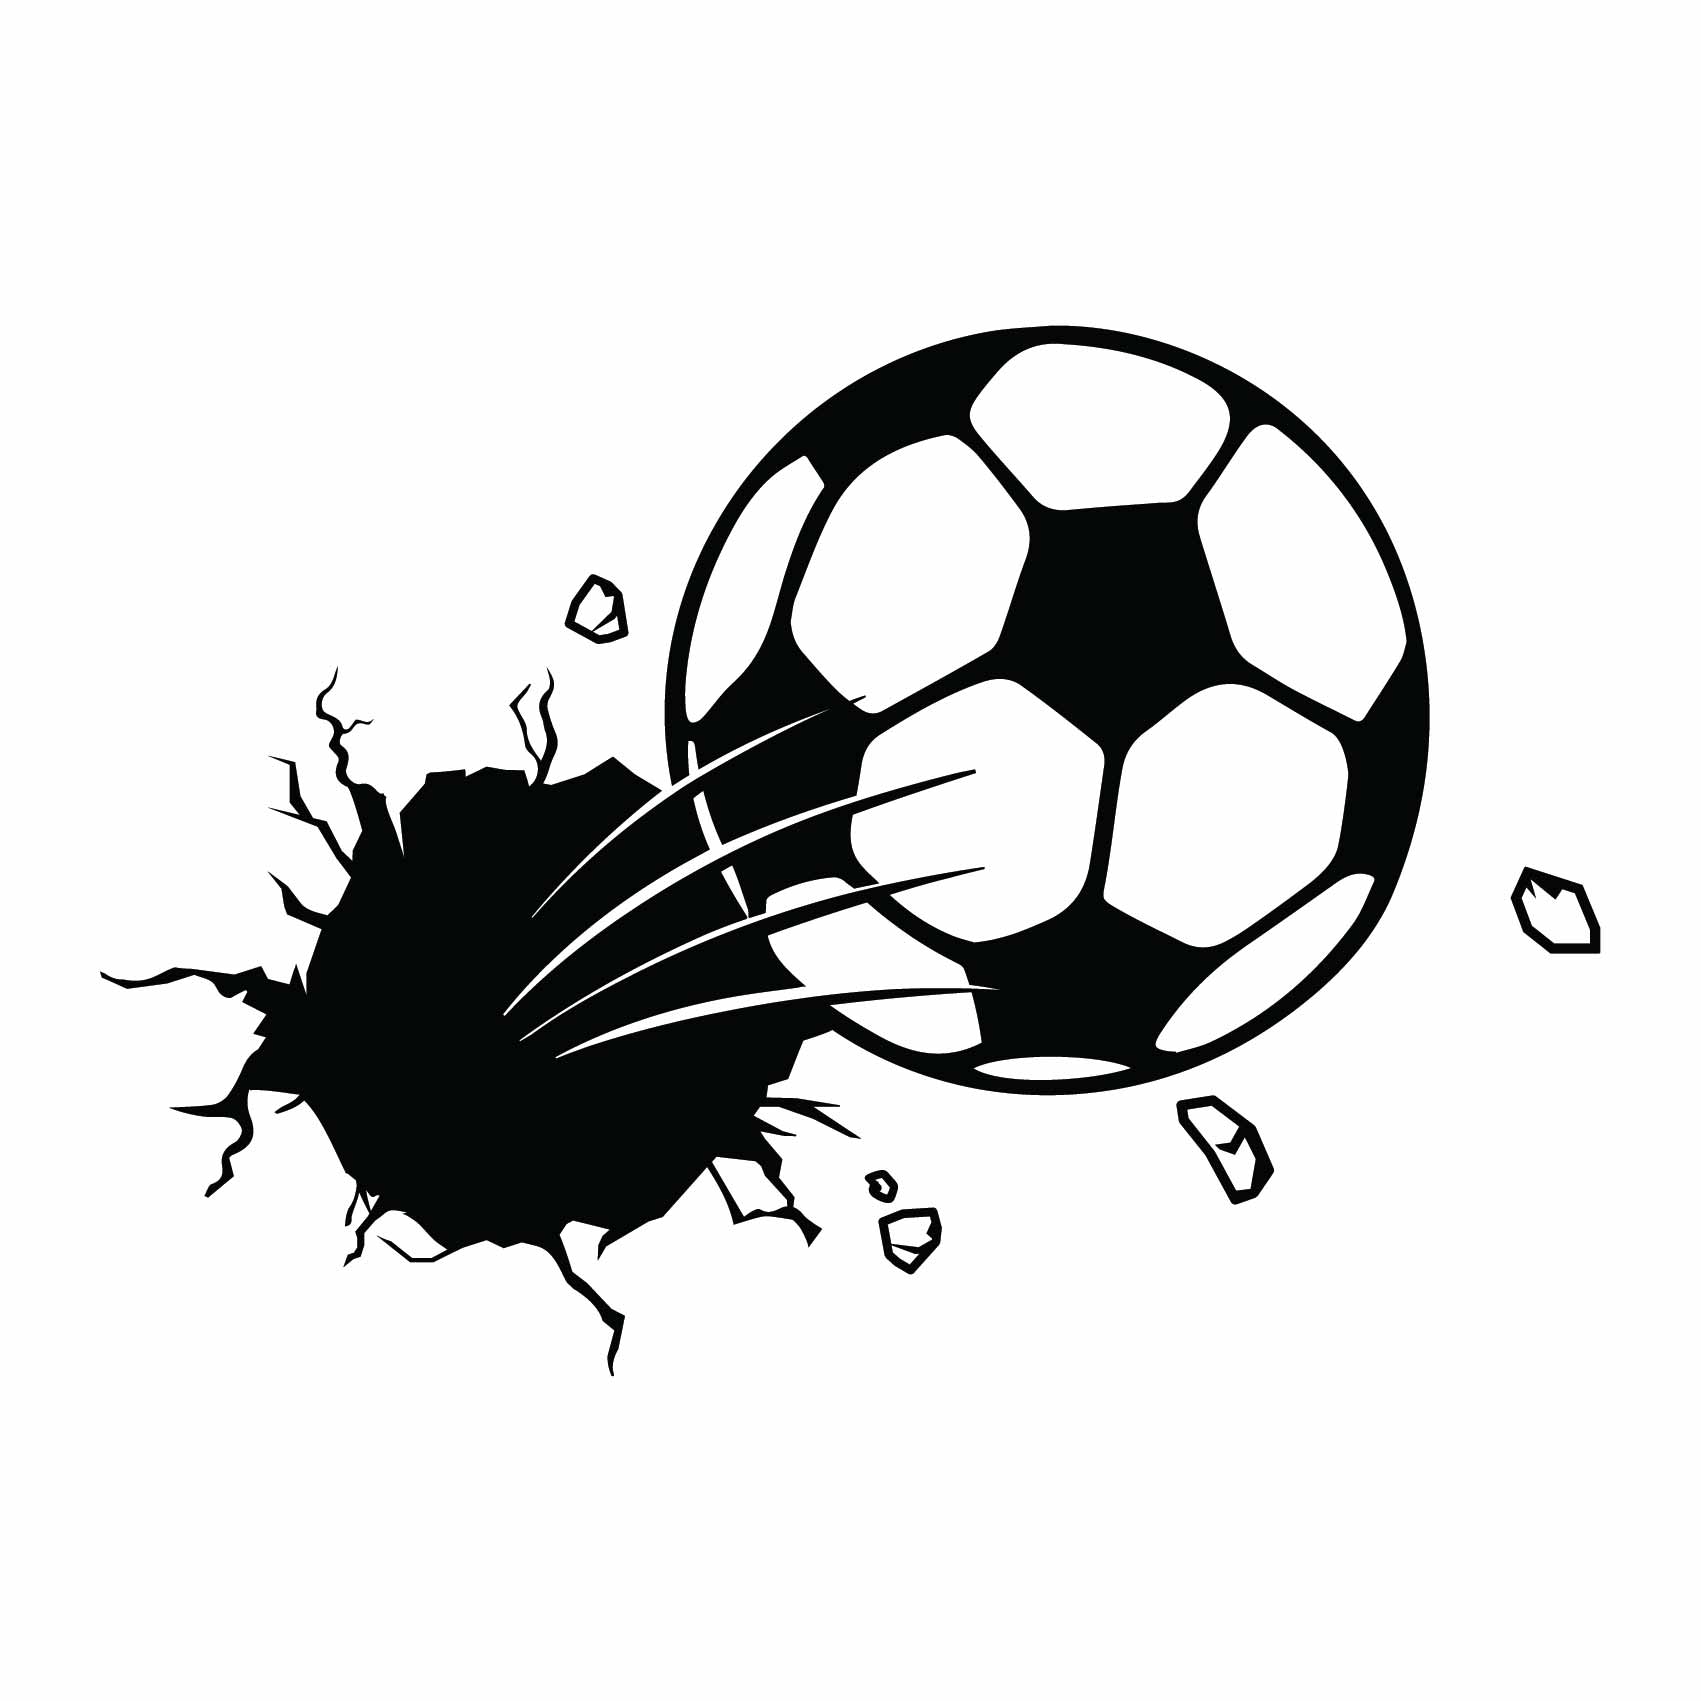 Sticker Ballon de Foot - Autocollant Ballon de Foot